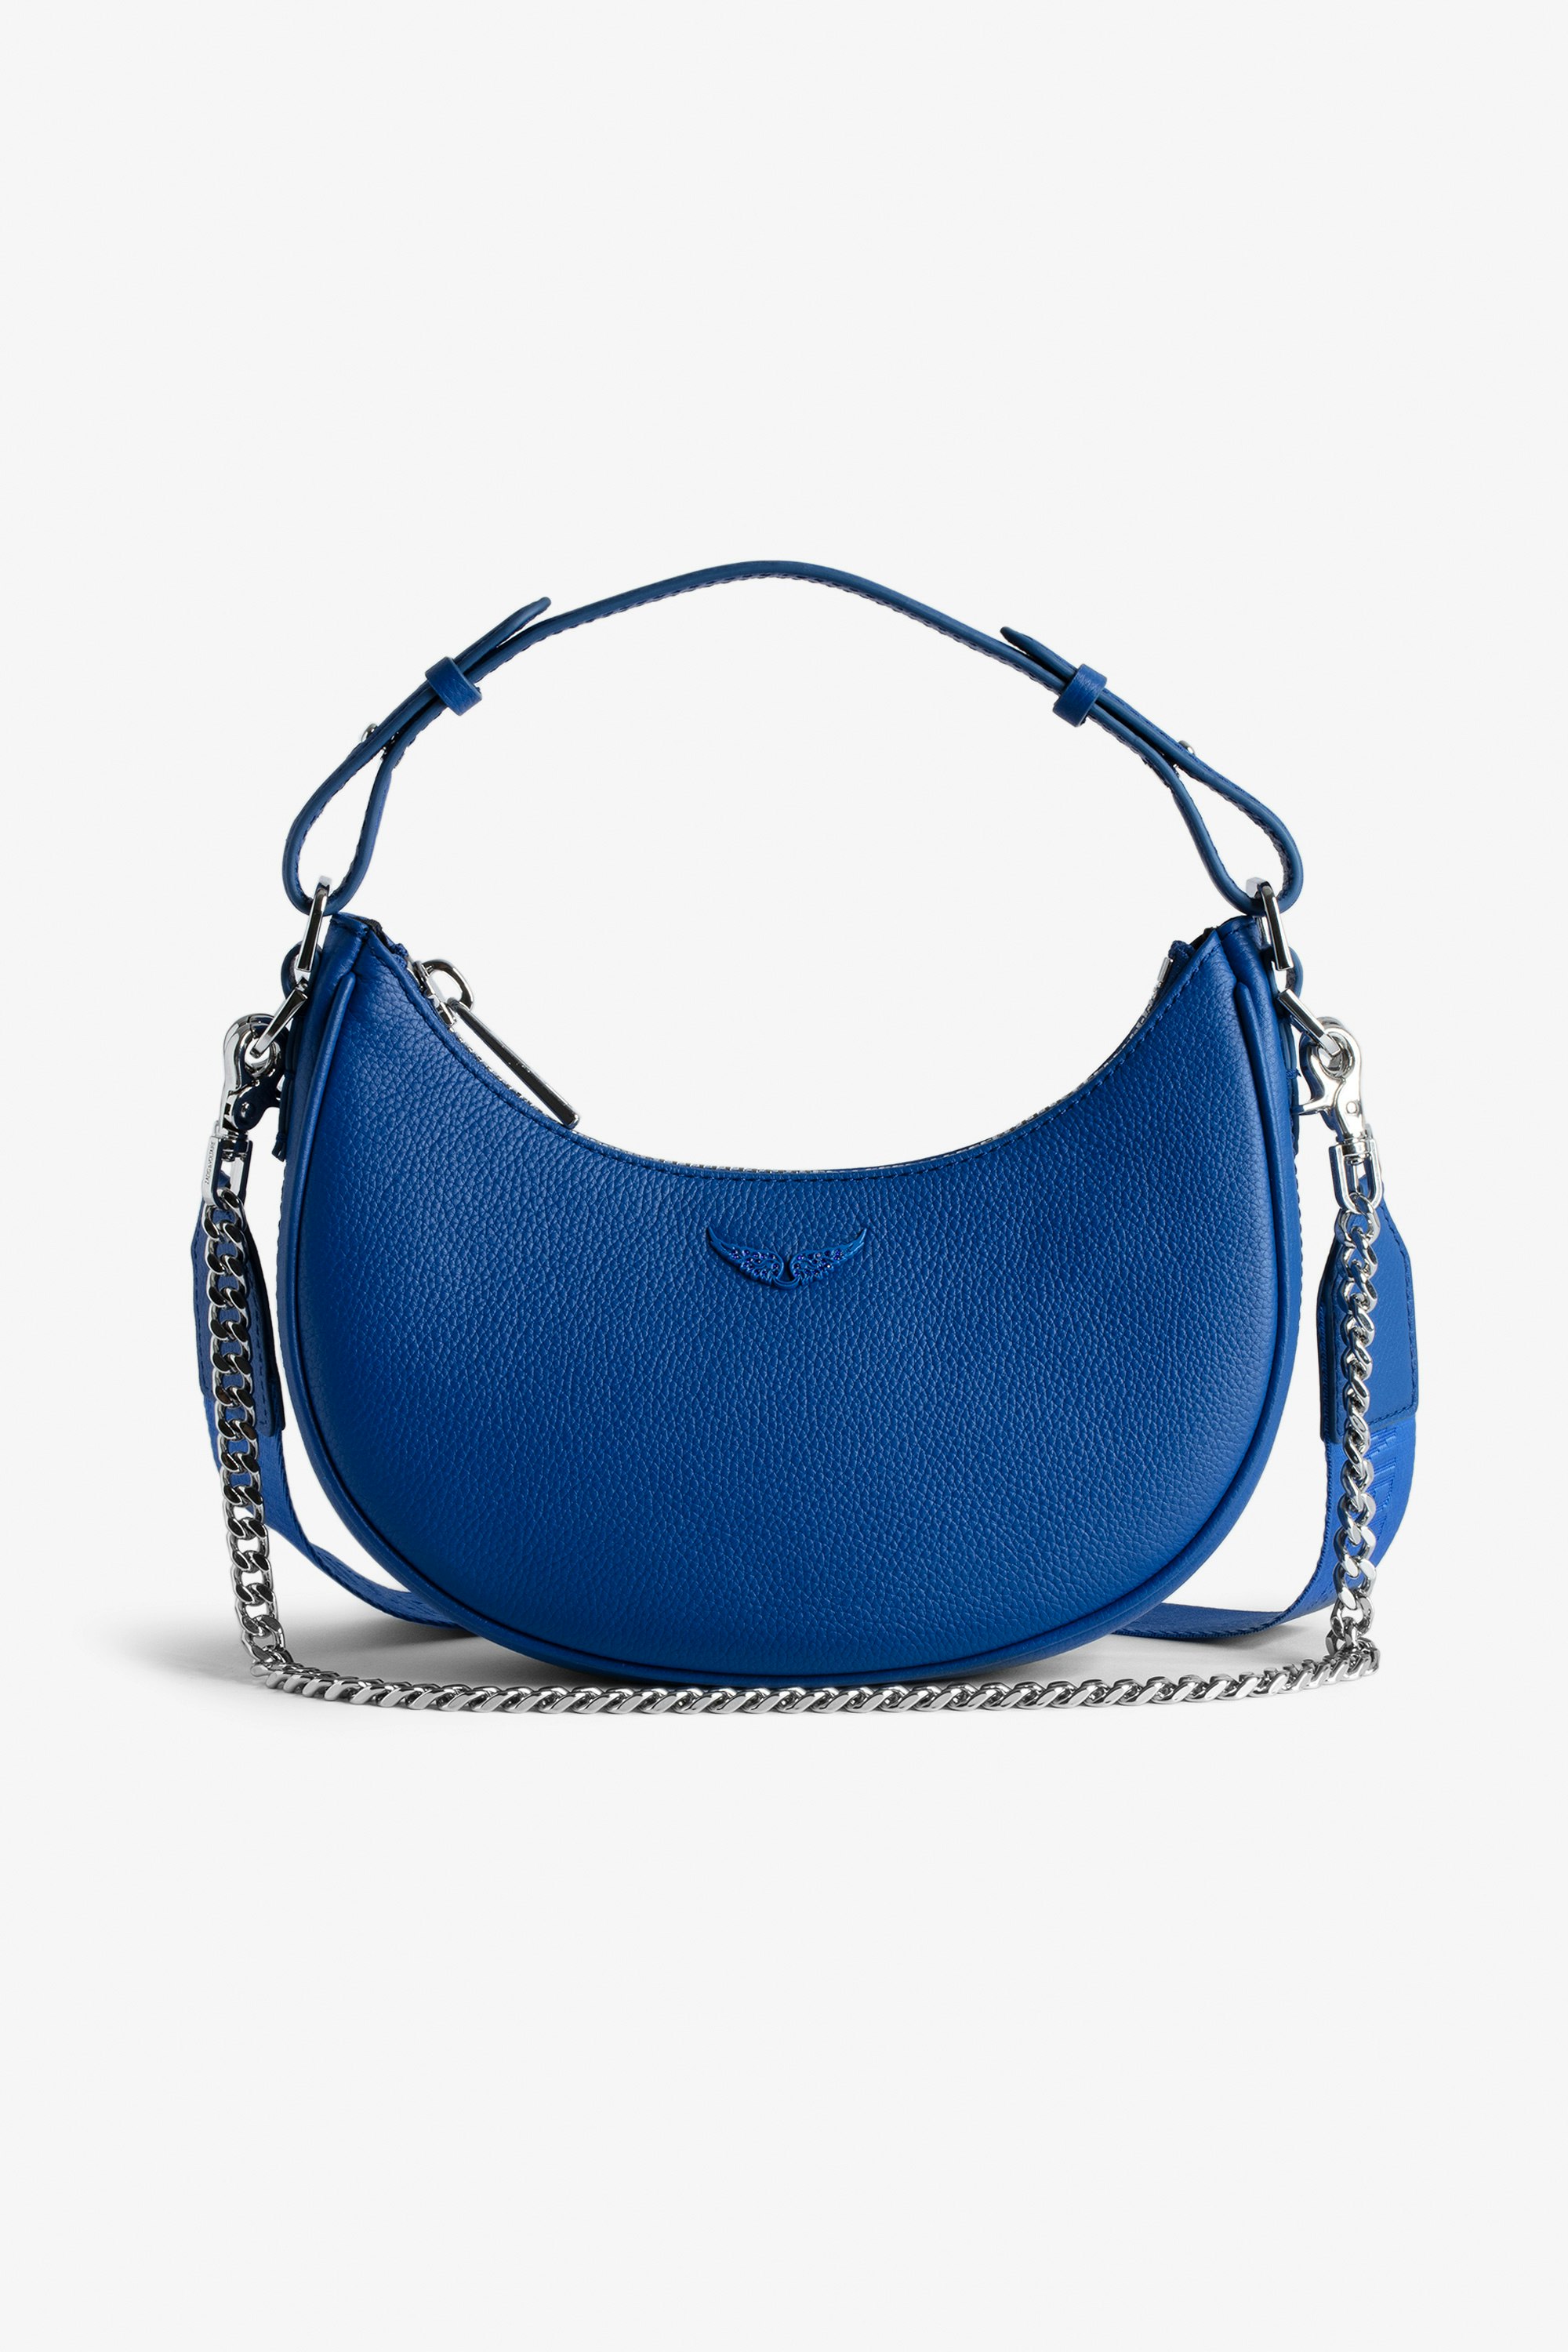 Tasche Moonrock Halbmondtasche für Damen aus blauem genarbtem Leder mit kurzem Henkel, Schulterriemen, Kette und Signature-Flügeln.